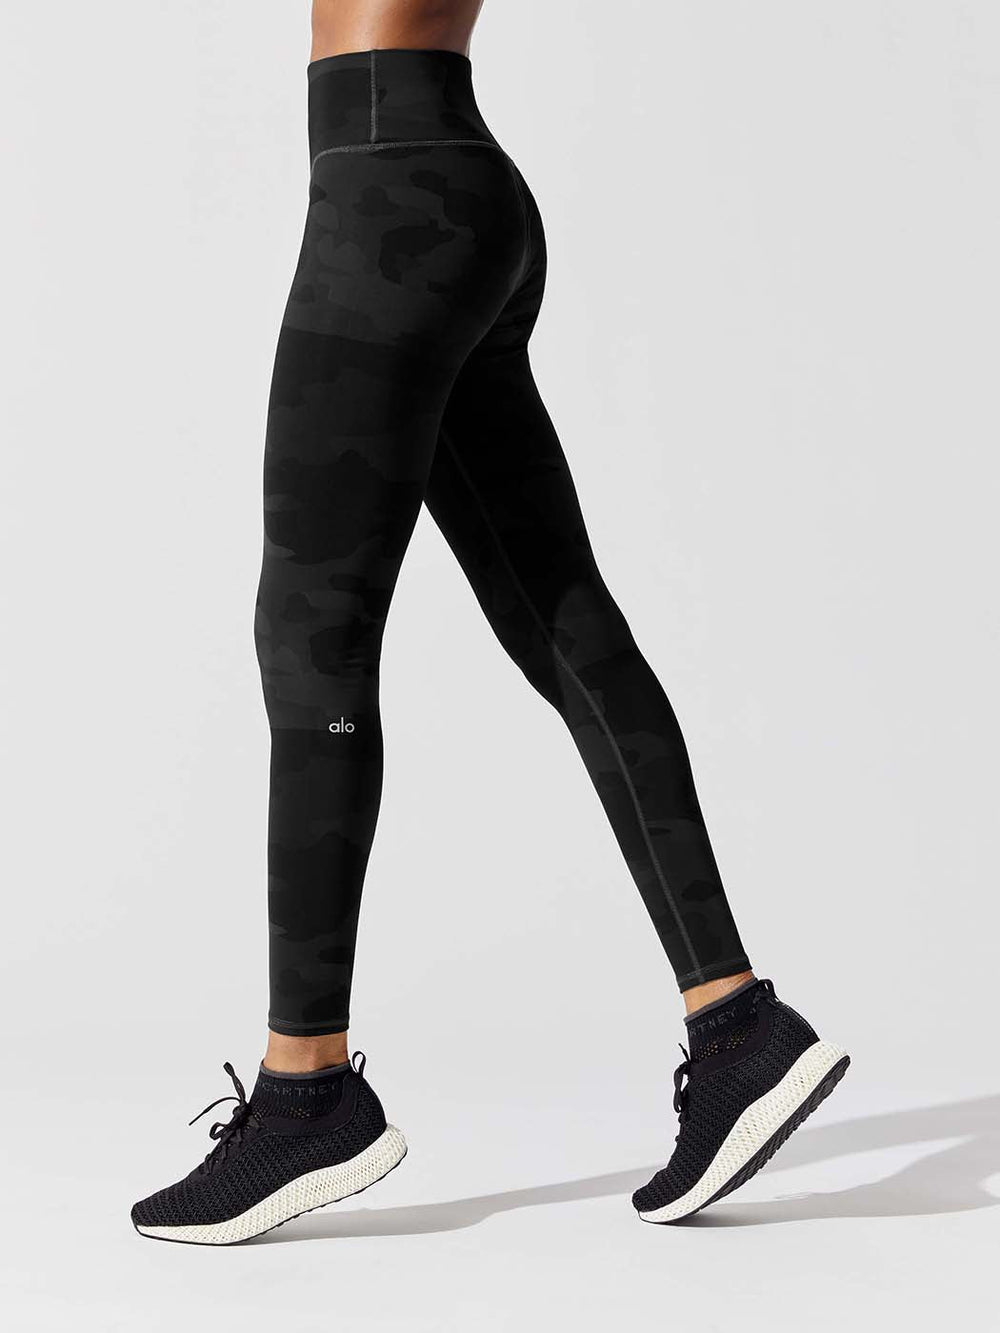 ALO Yoga, Pants & Jumpsuits, Alo Yoga Leggings Size Xs